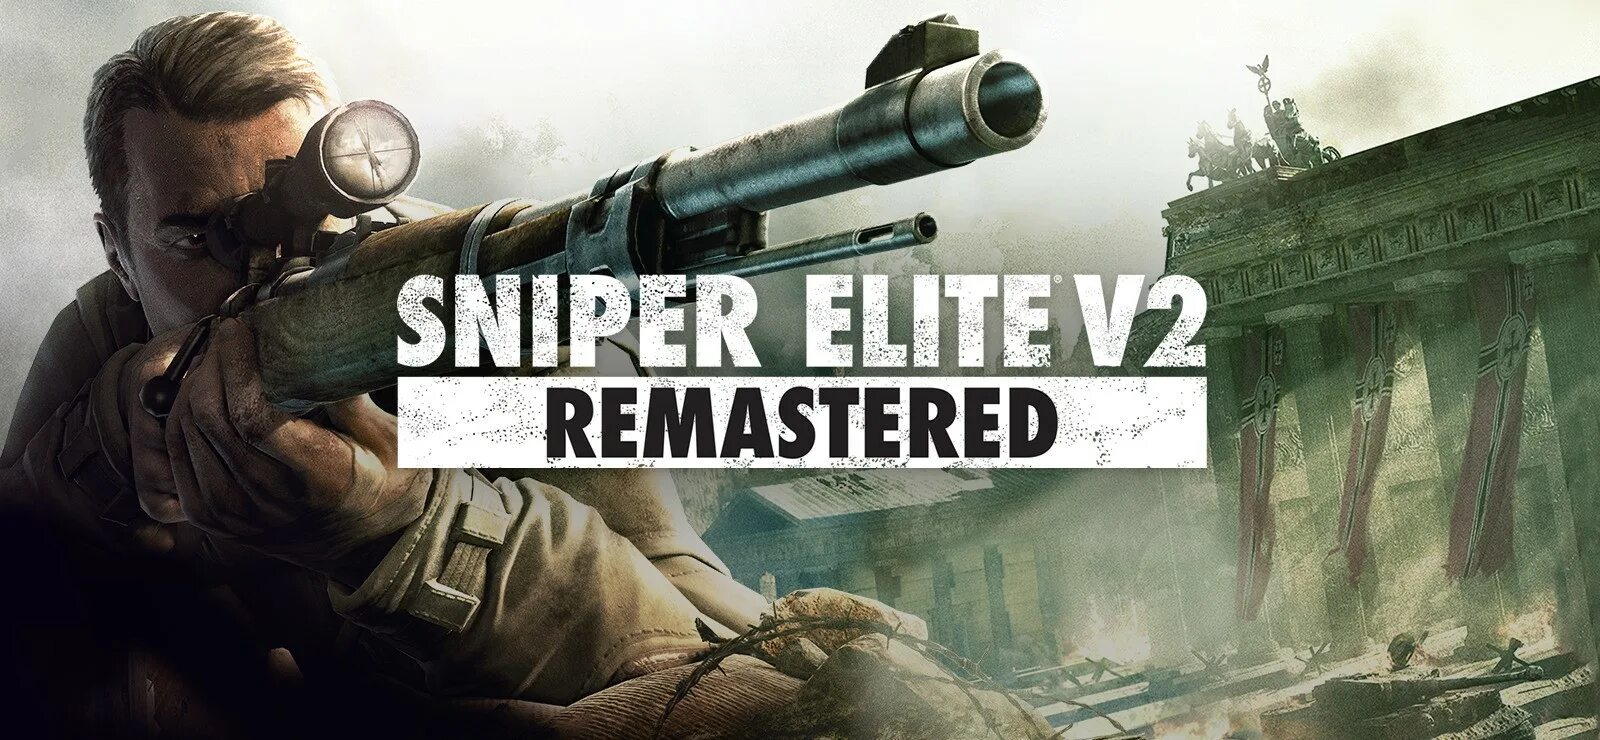 Sniper elite 5 купить ключ steam. Снайпер Элит v2 Remastered. Sniper Elite v2. Обложка Sniper Elite 2 Remastered. Sniper Elite 5 обложка.